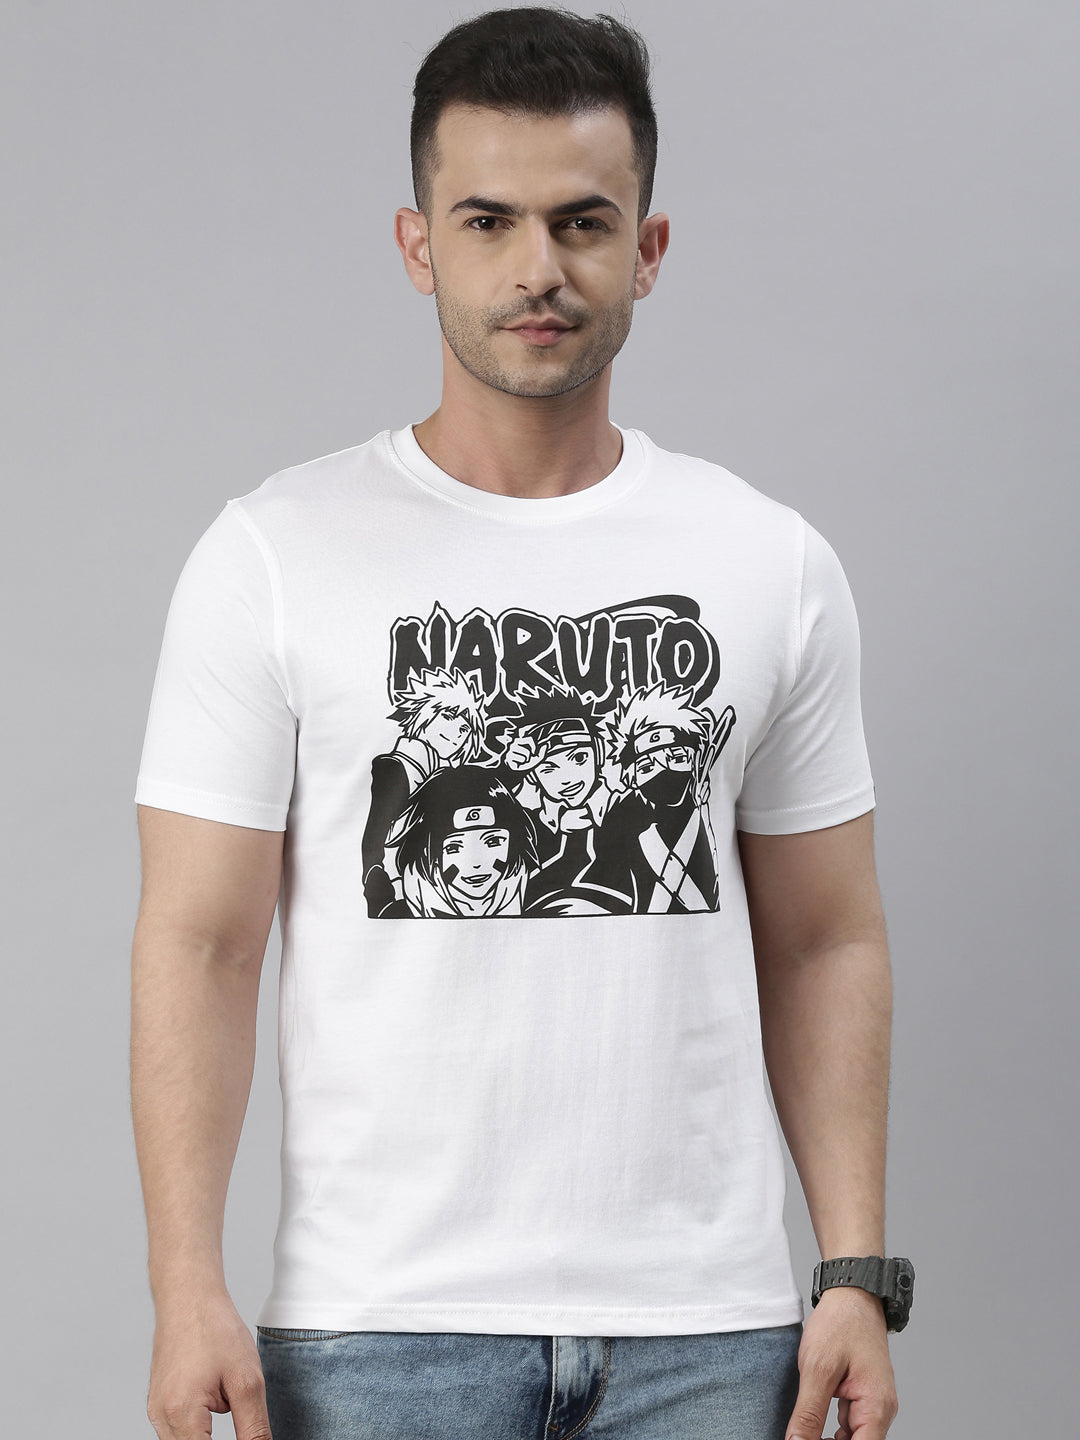 Team Kakashi - Naruto White Anime T-Shirt Graphic T-Shirts Bushirt   